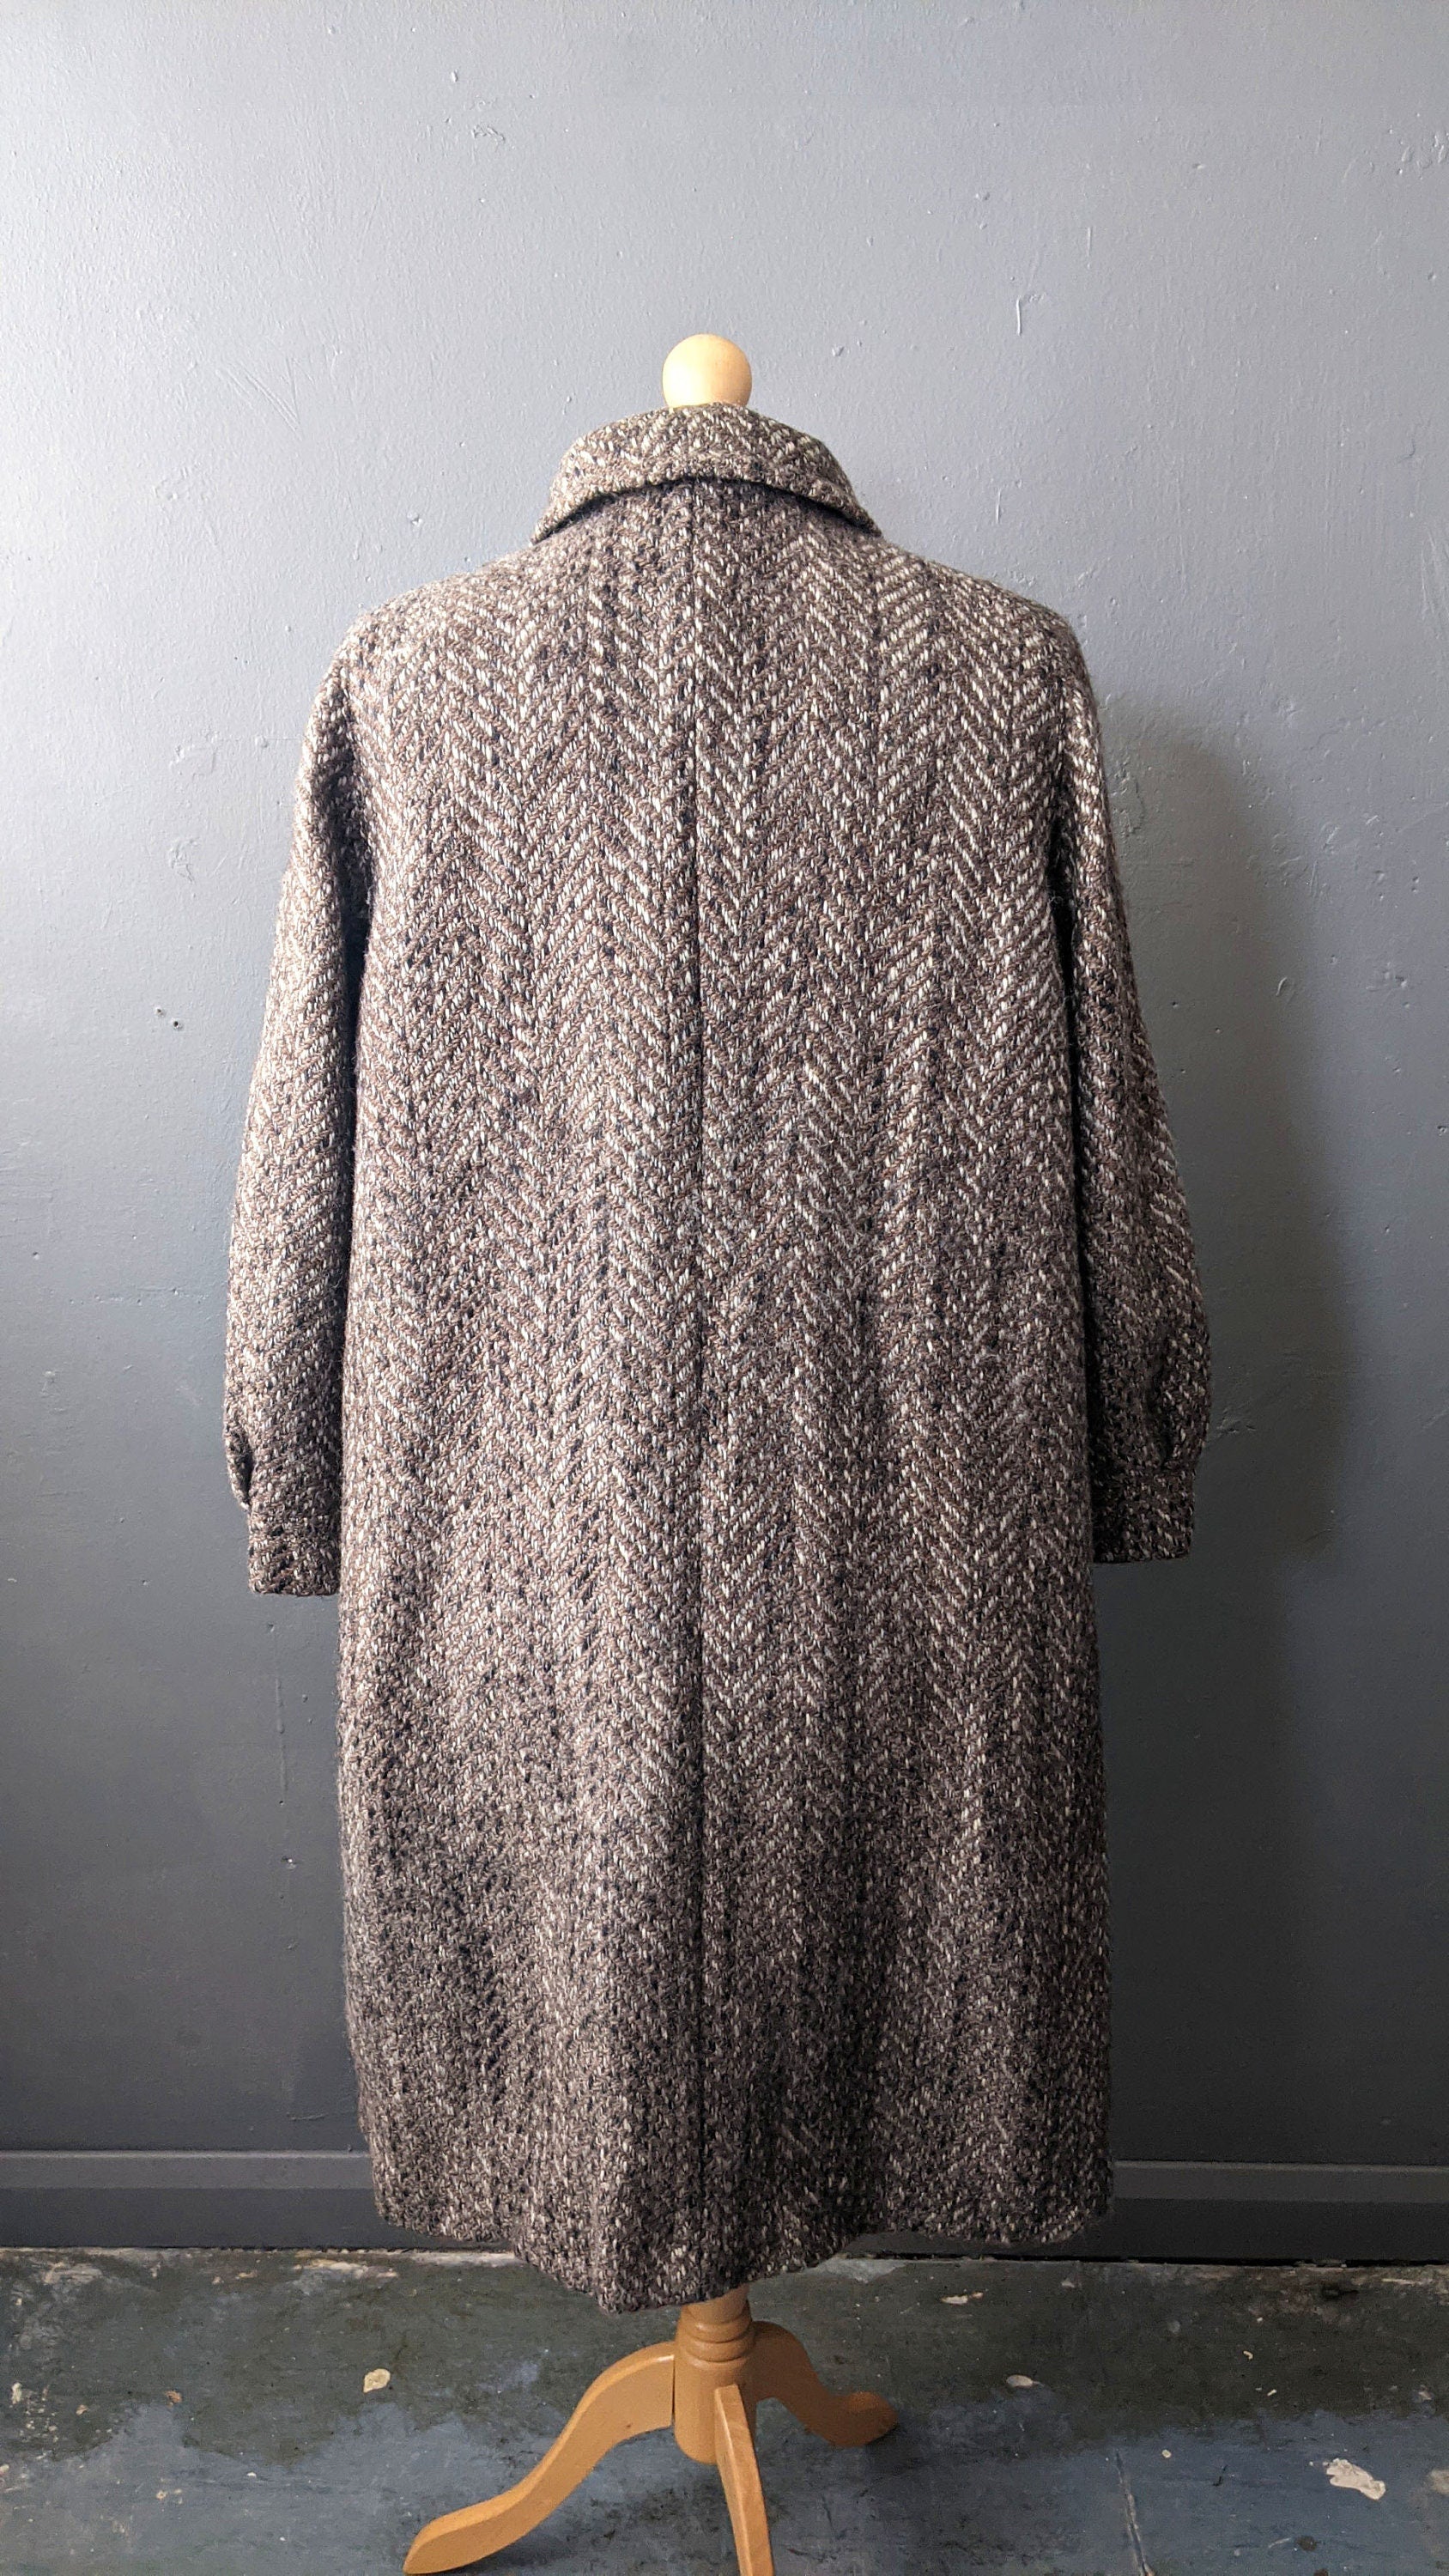 Long Wool Tweed Coat with Suede Trim, 80s Winter Overcoat, Plus Size